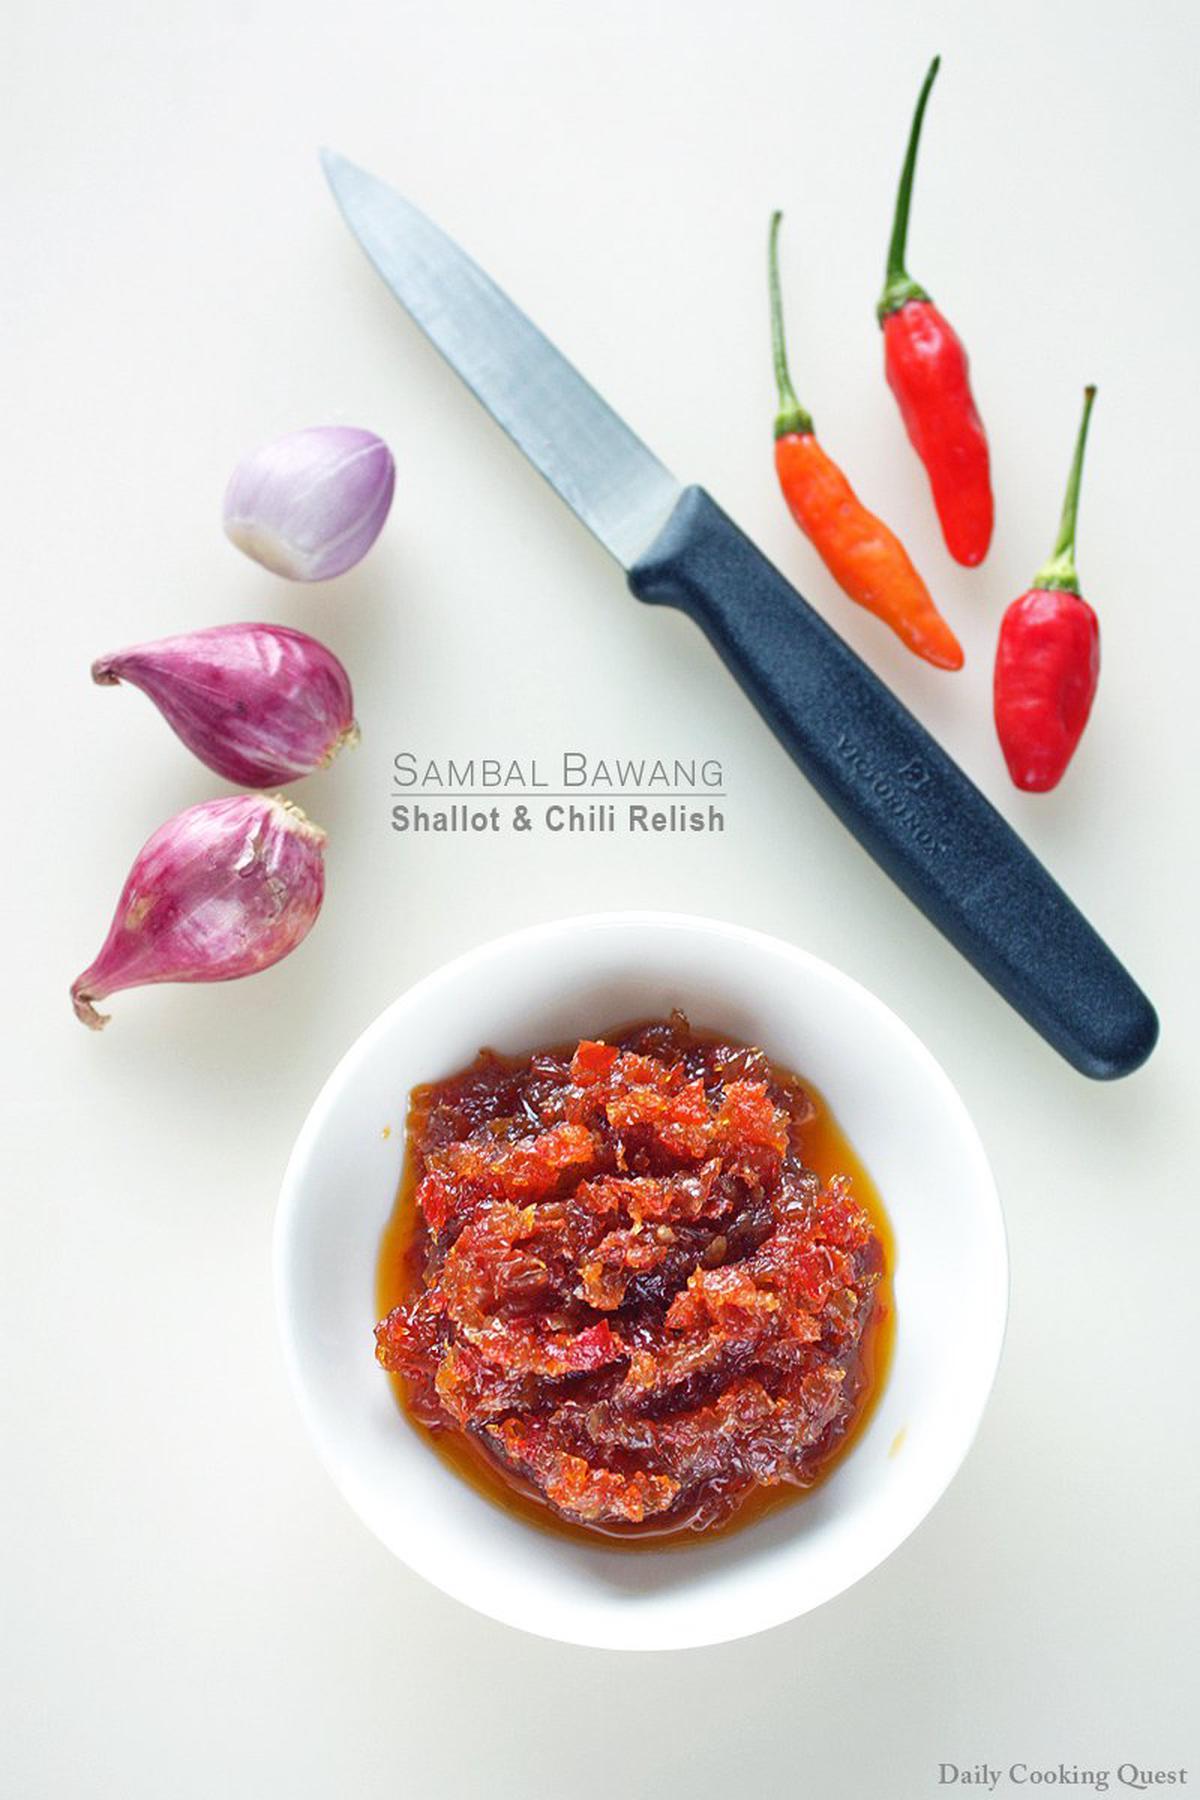 Sambal Bawang - Shallot and Chili Relish